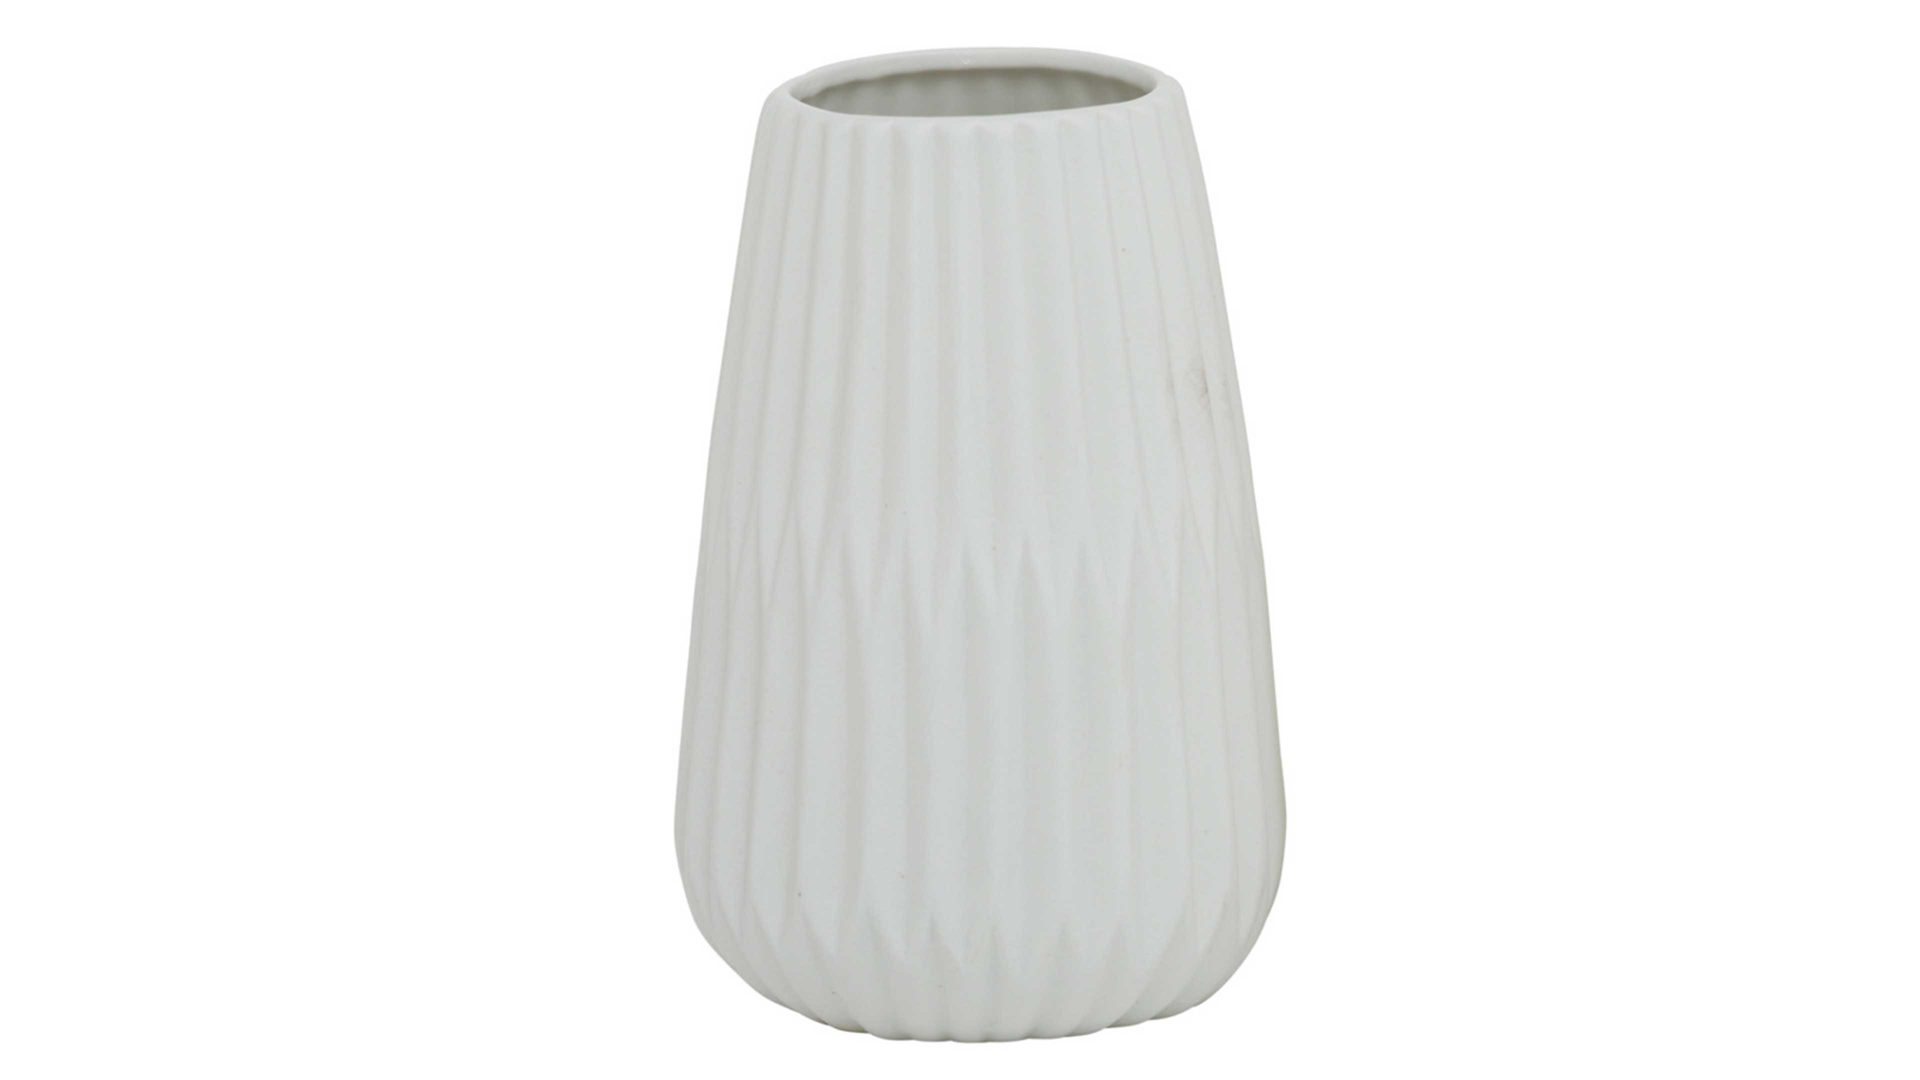 Vase Interliving BEST BUDDYS! aus Keramik in Weiß Interliving BEST BUDDYS!  Vase Esko mattweißes Porzellan - Durchmesser ca. 8 cm